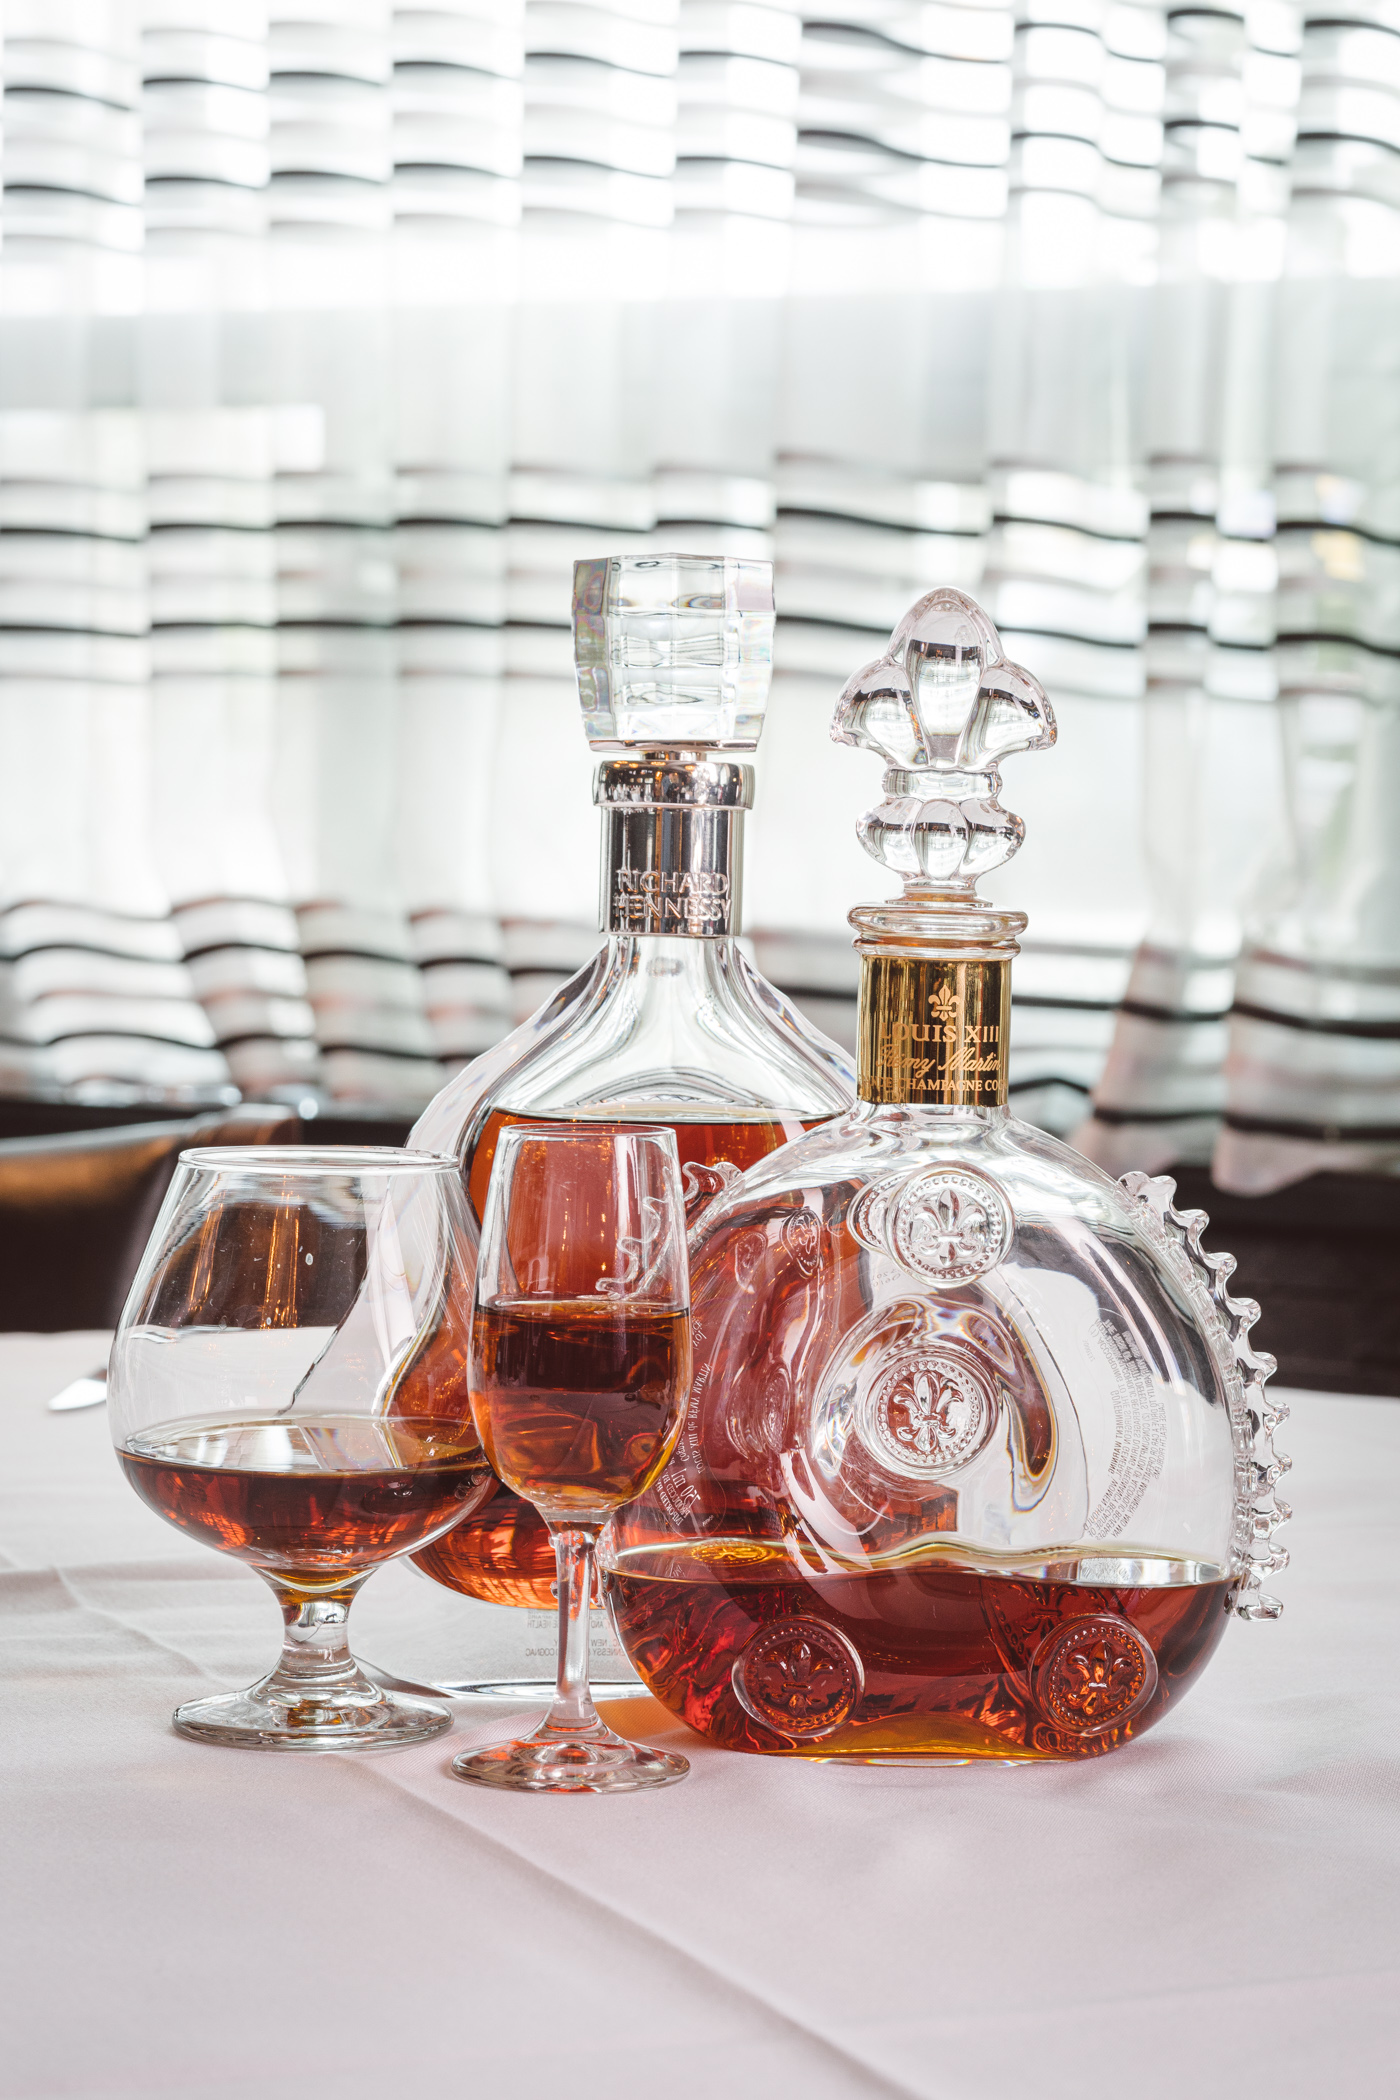 Glasses Snifter Cognac Brandy, Louis Xiii Cognac